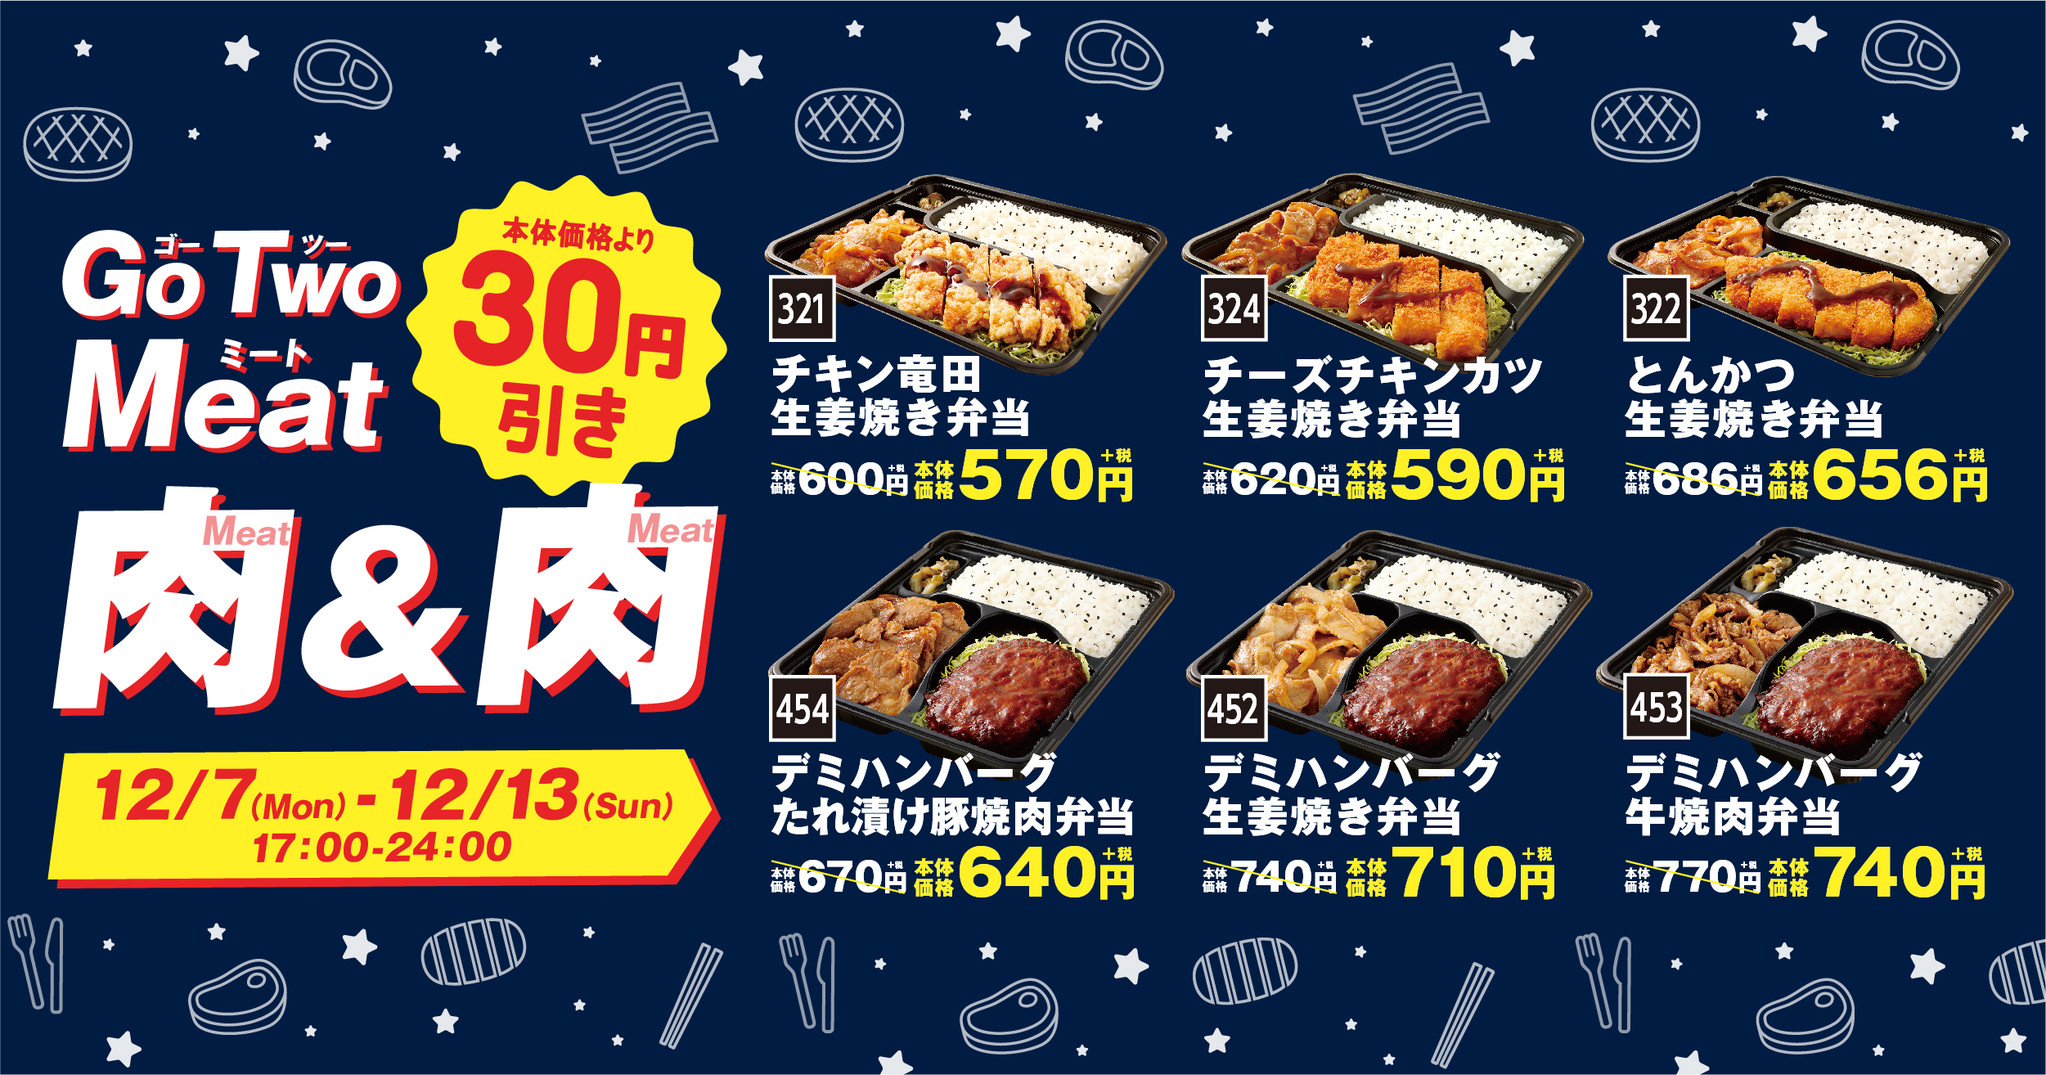 17時から24時限定 オリジンでgo Two Meat ゴーツーミート 30円引きキャンペーンを期間限定で開催 イオン株式会社のプレスリリース